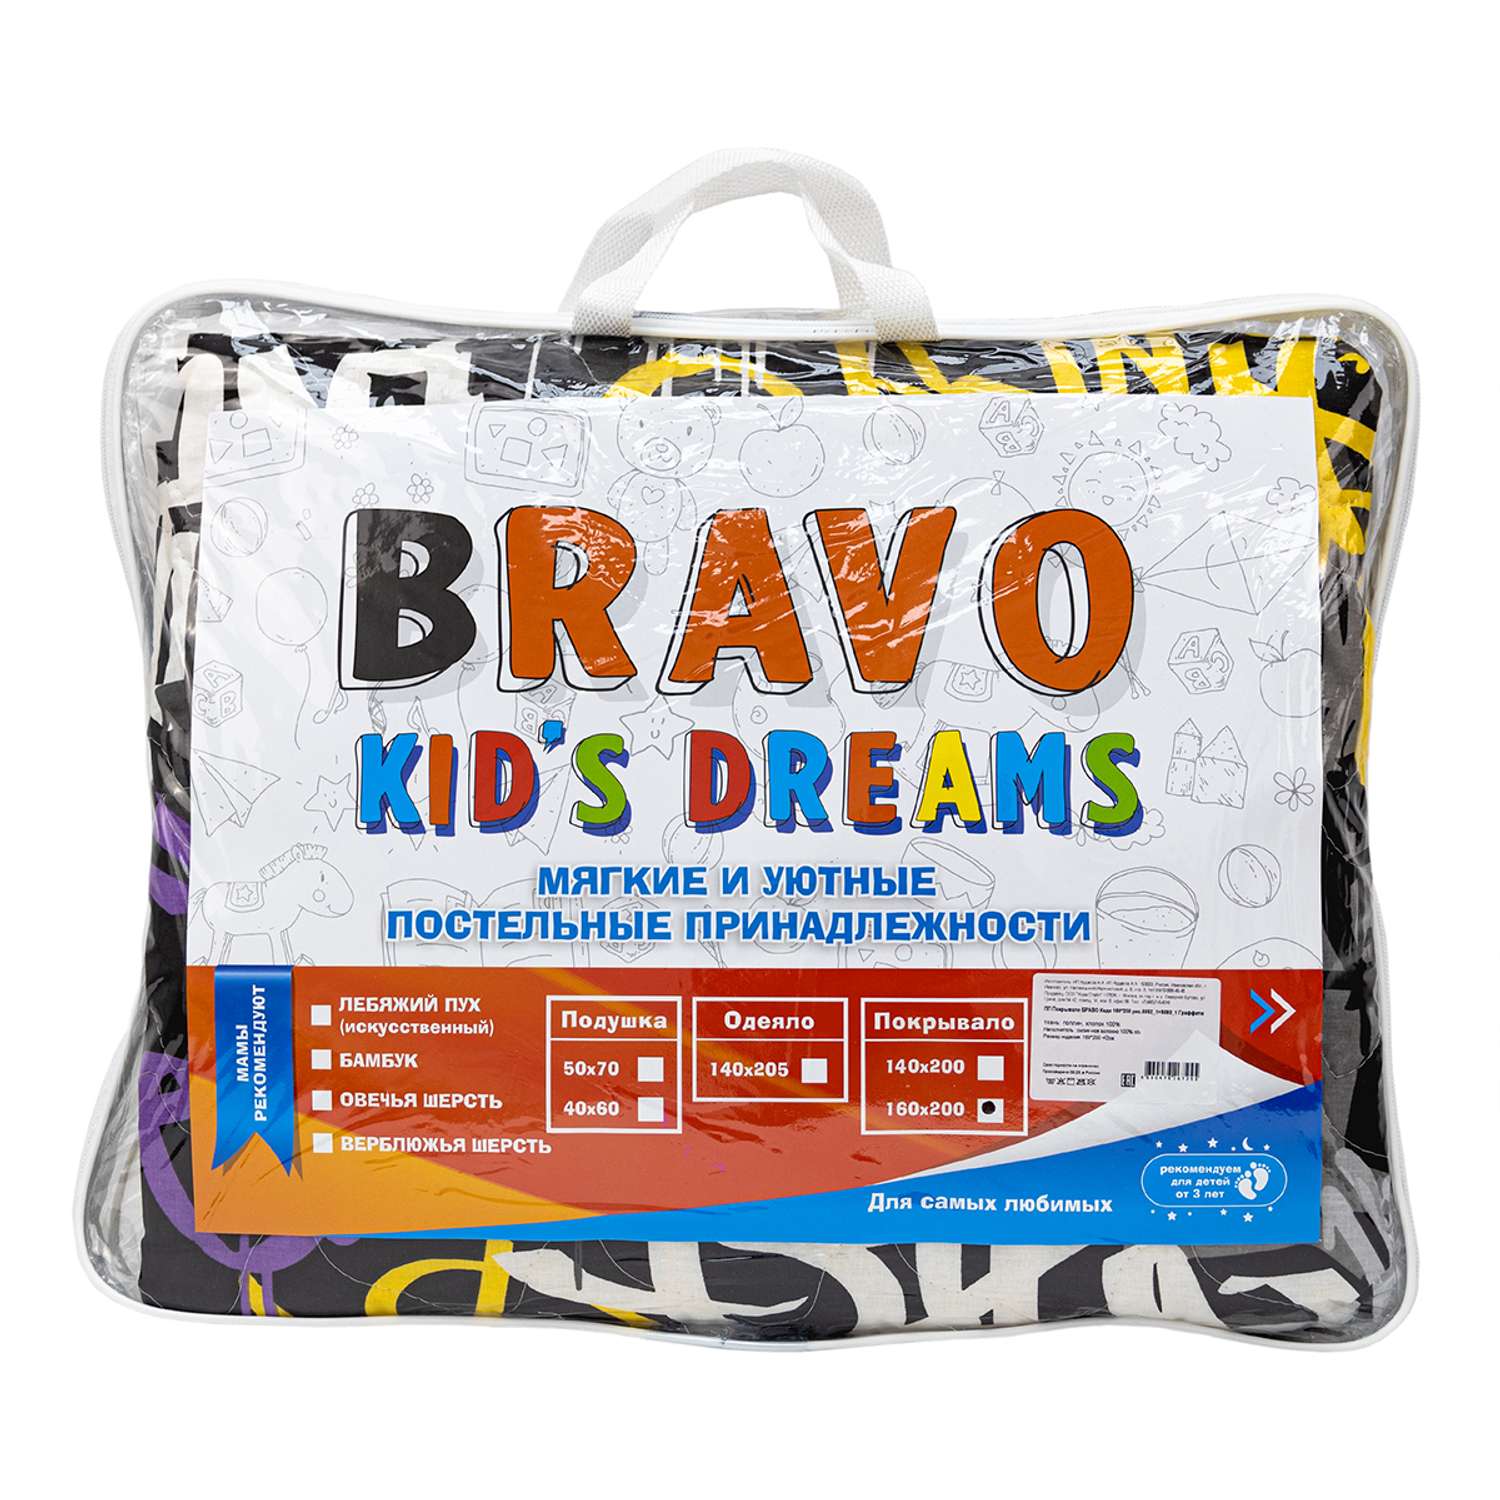 Покрывало BRAVO kids dreams Граффити 160х200 см - фото 8